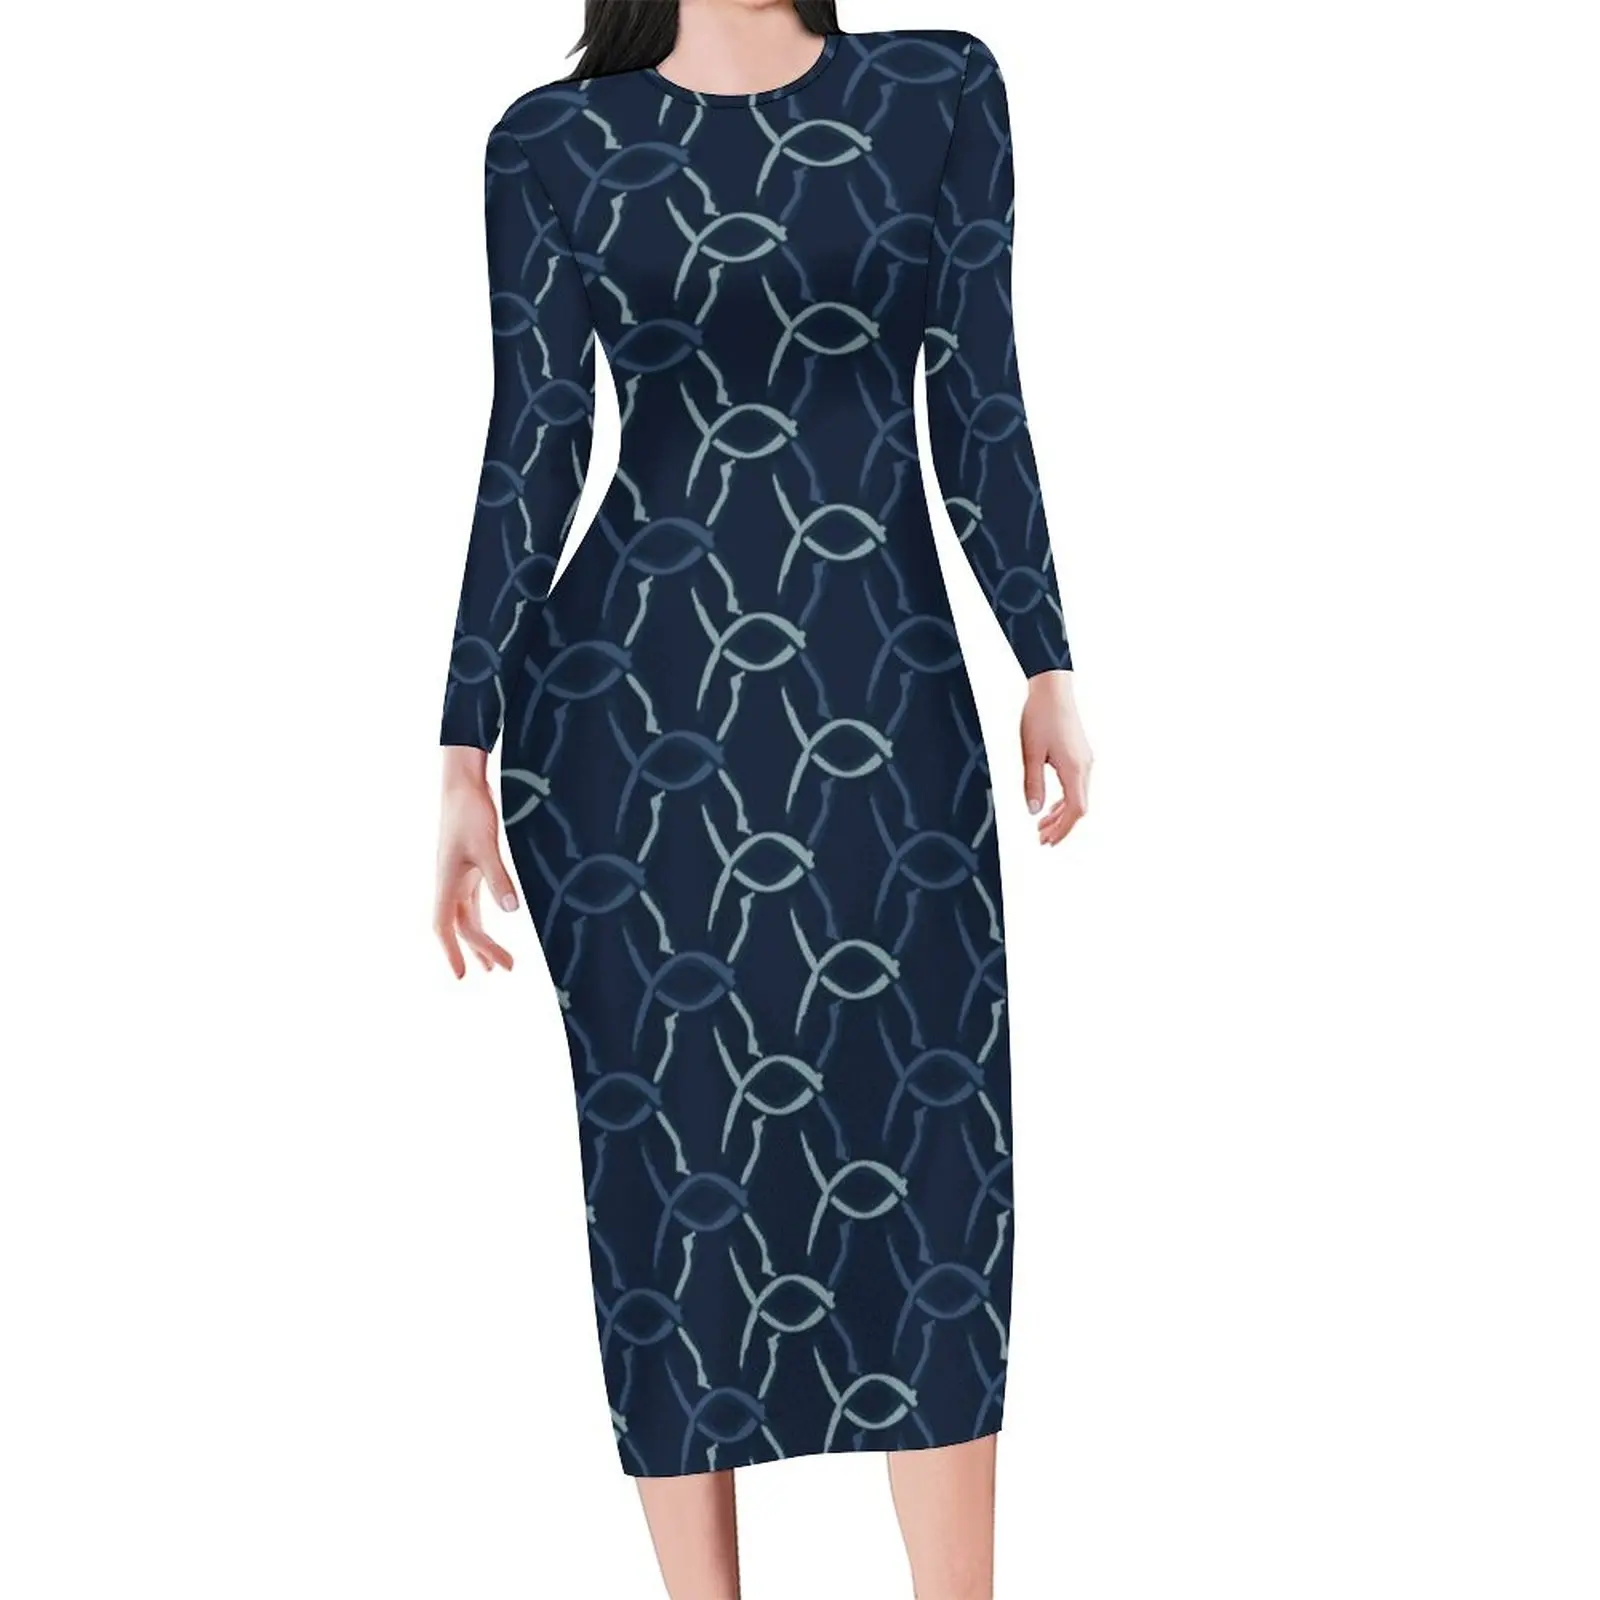 

Платье женское с принтом цепей, облегающее элегантное Сетчатое, с длинным рукавом, в стиле оверсайз, цвет Индиго/Синий, уличная одежда с граф...